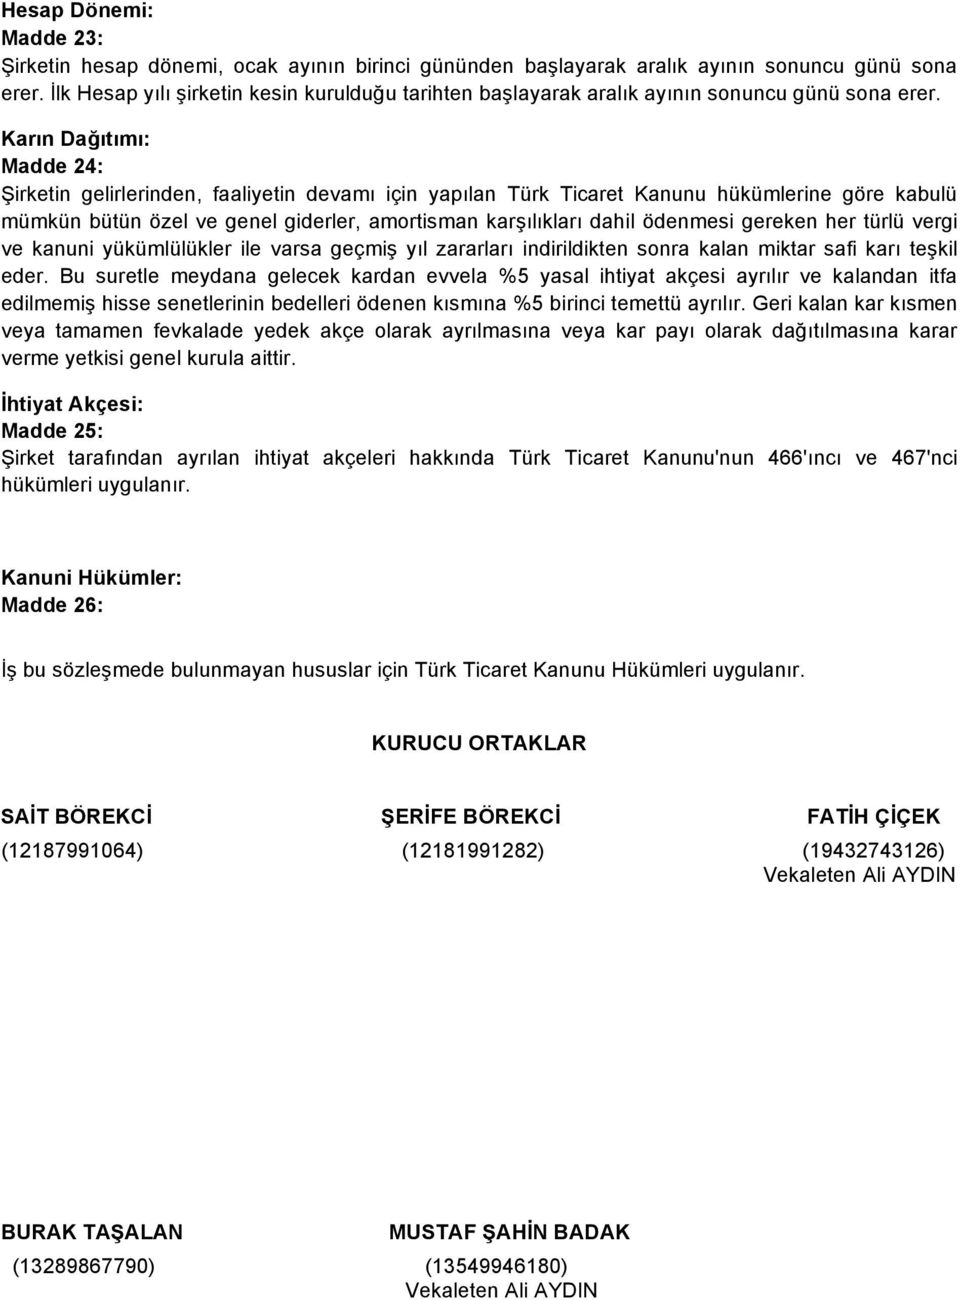 Karın Dağıtımı: Madde 24: Şirketin gelirlerinden, faaliyetin devamı için yapılan Türk Ticaret Kanunu hükümlerine göre kabulü mümkün bütün özel ve genel giderler, amortisman karşılıkları dahil